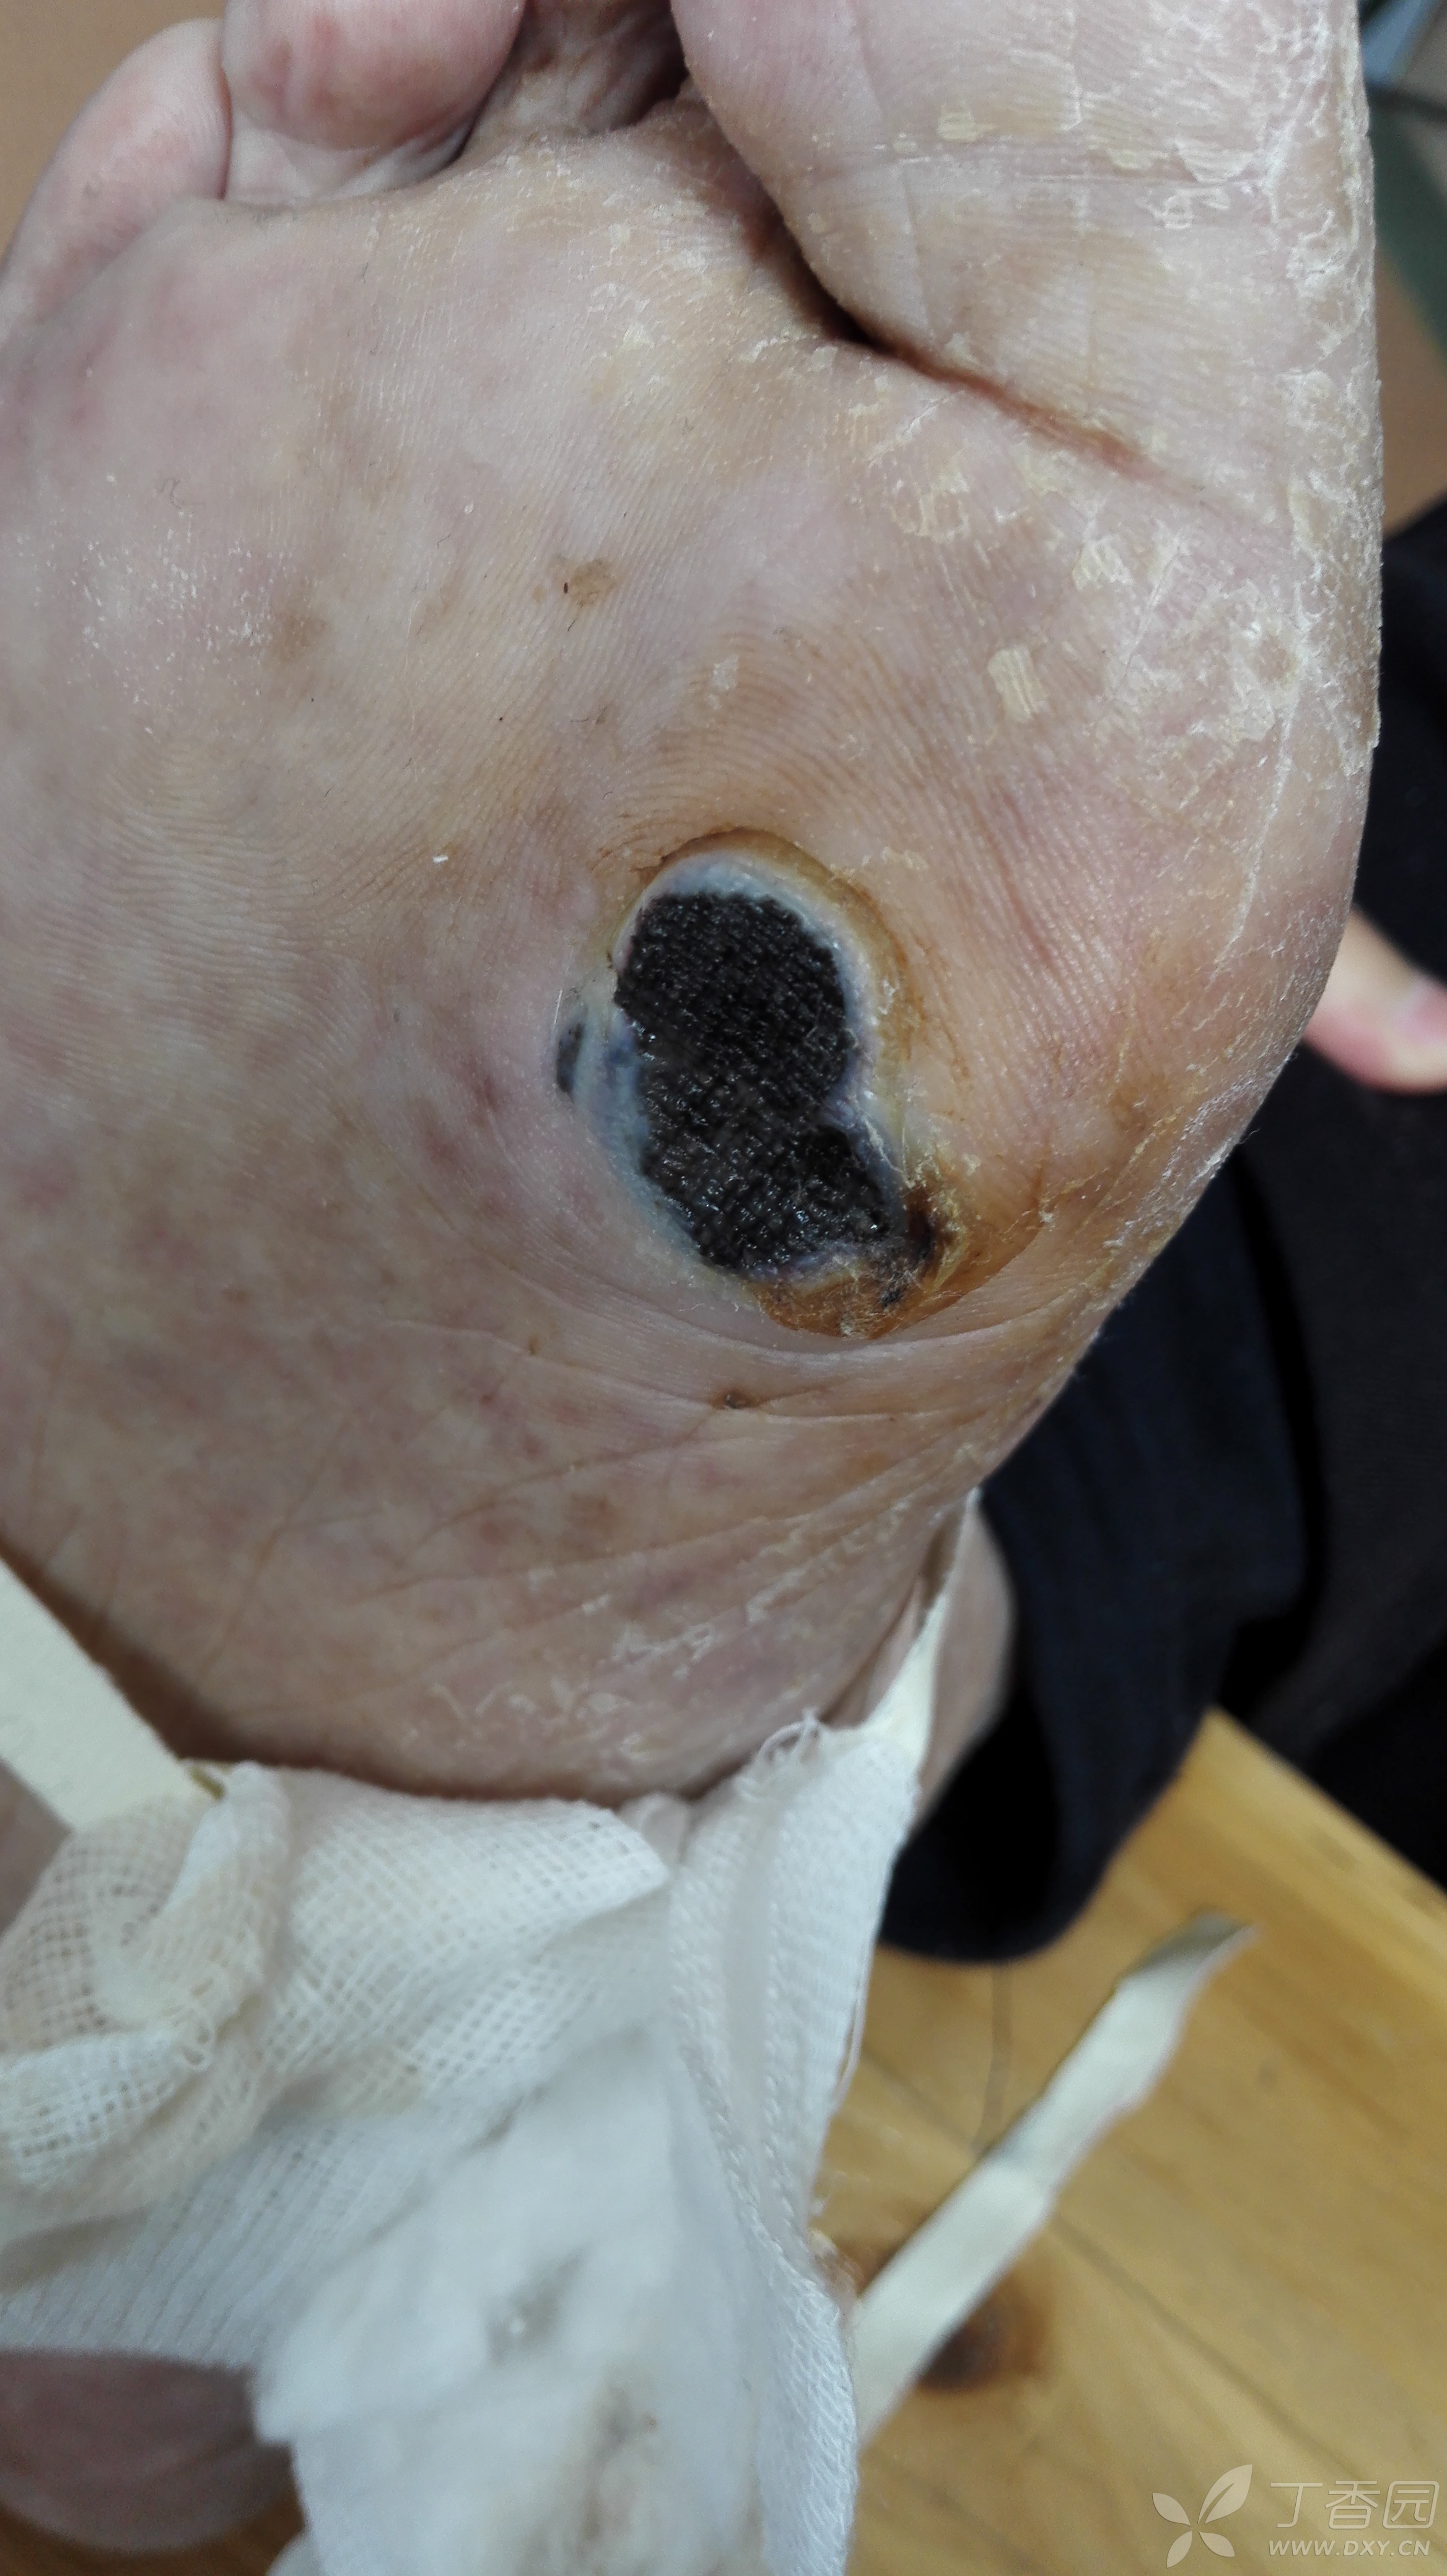 典型病例:恶性黑色素瘤.男85岁,右足色素性溃疡伴疼痛